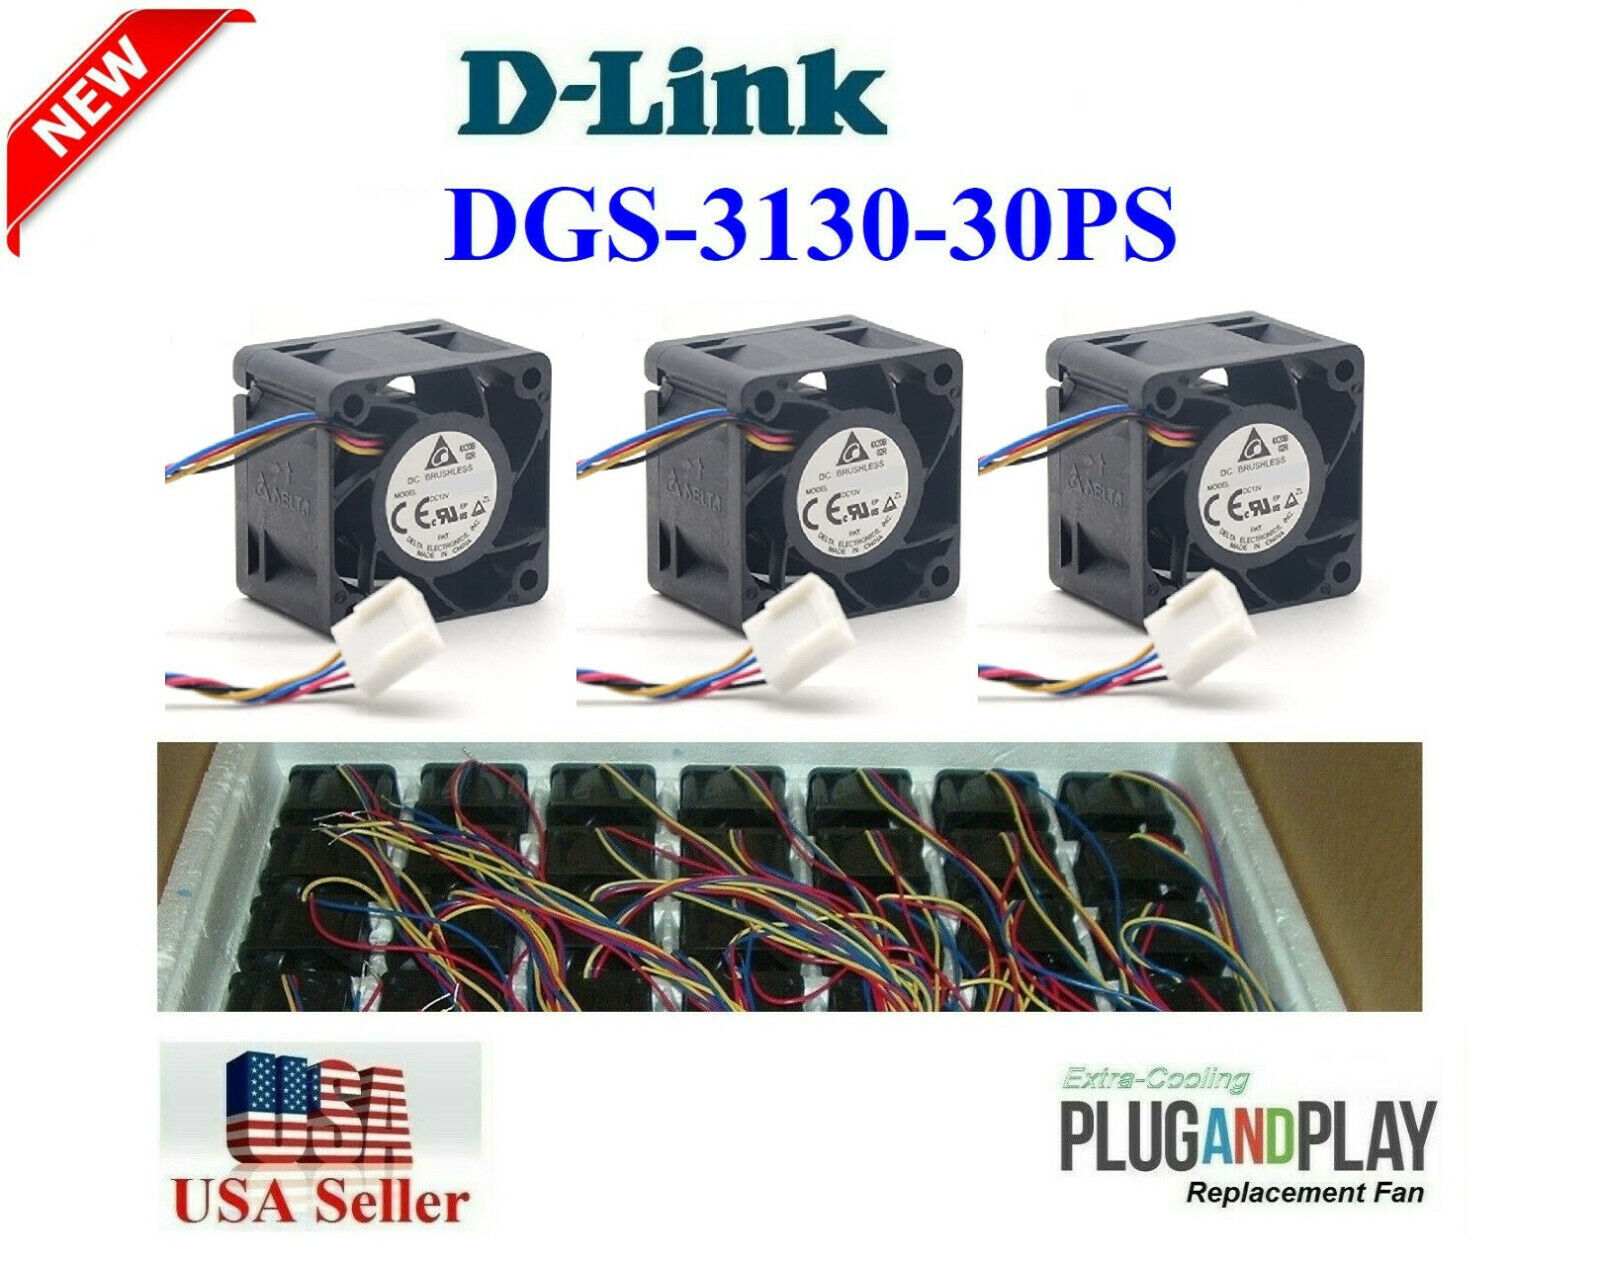 **Quiet** Version 3x Replacement Fans for D-Link DGS-3130-30PS